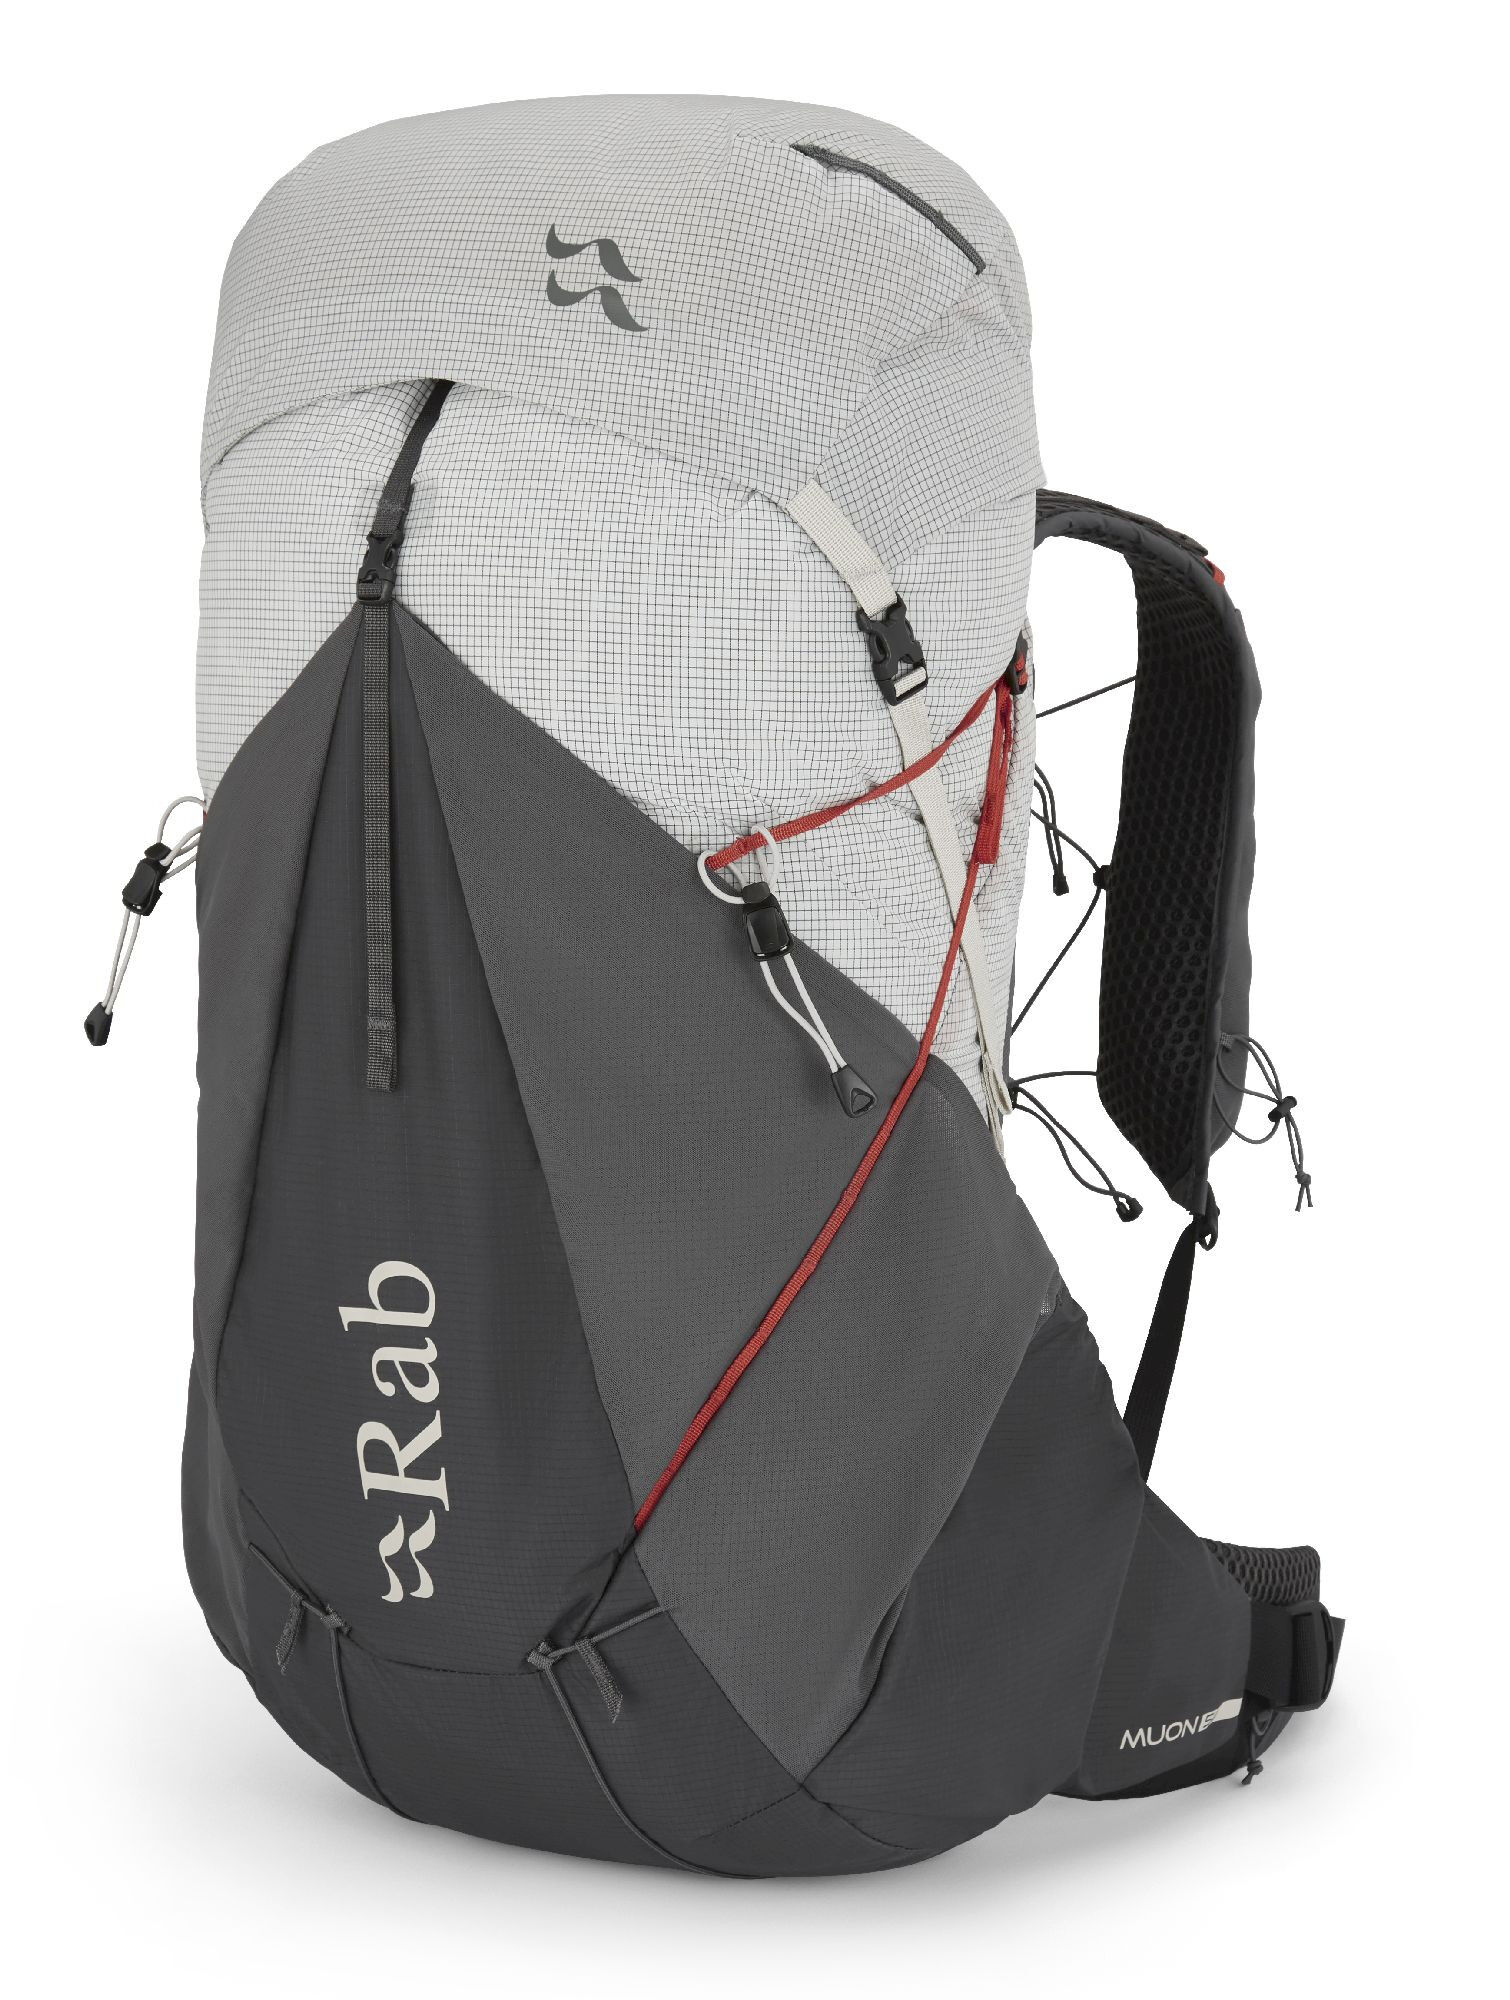 Rab Muon 50 - Walking backpack - Men's | Hardloop